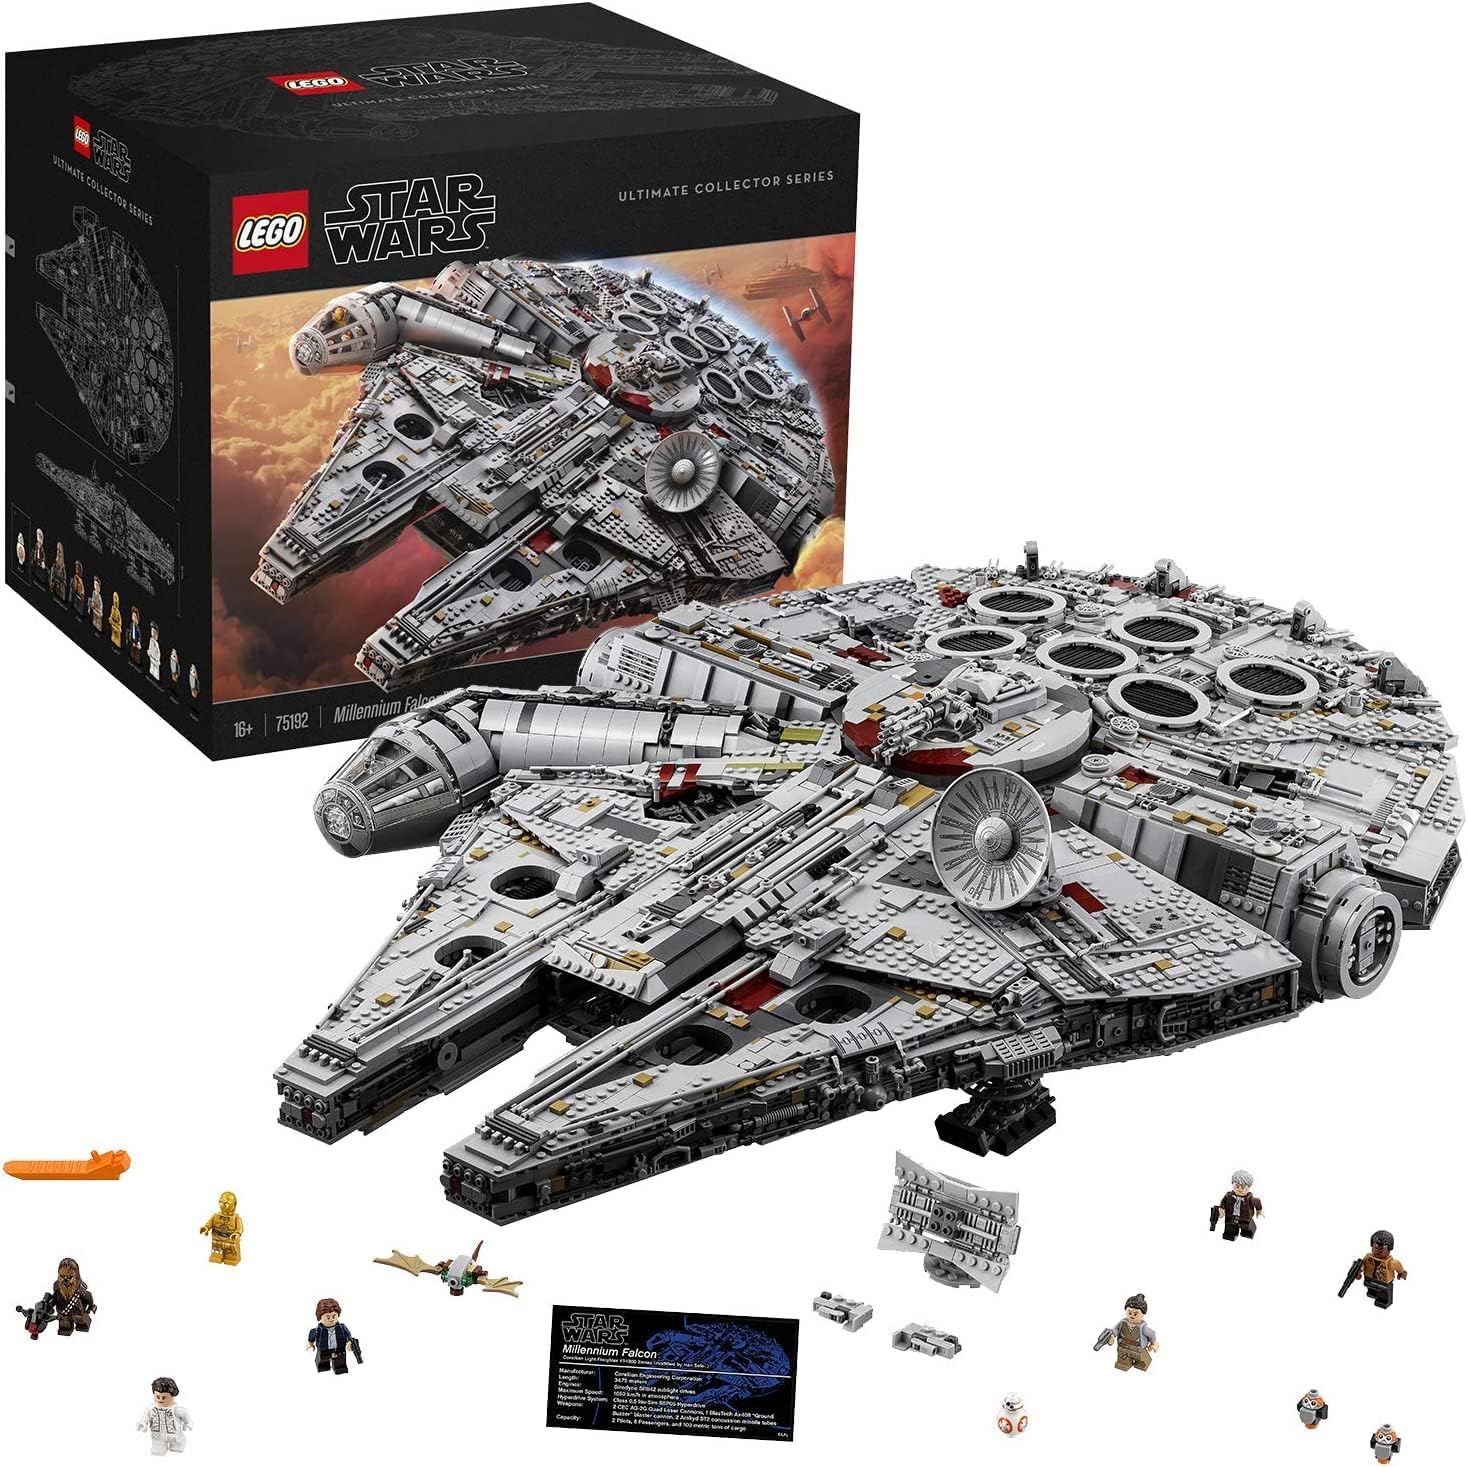 1. LEGO Star Wars UCS Millennium Falcon (#75192) - $799.99 😱